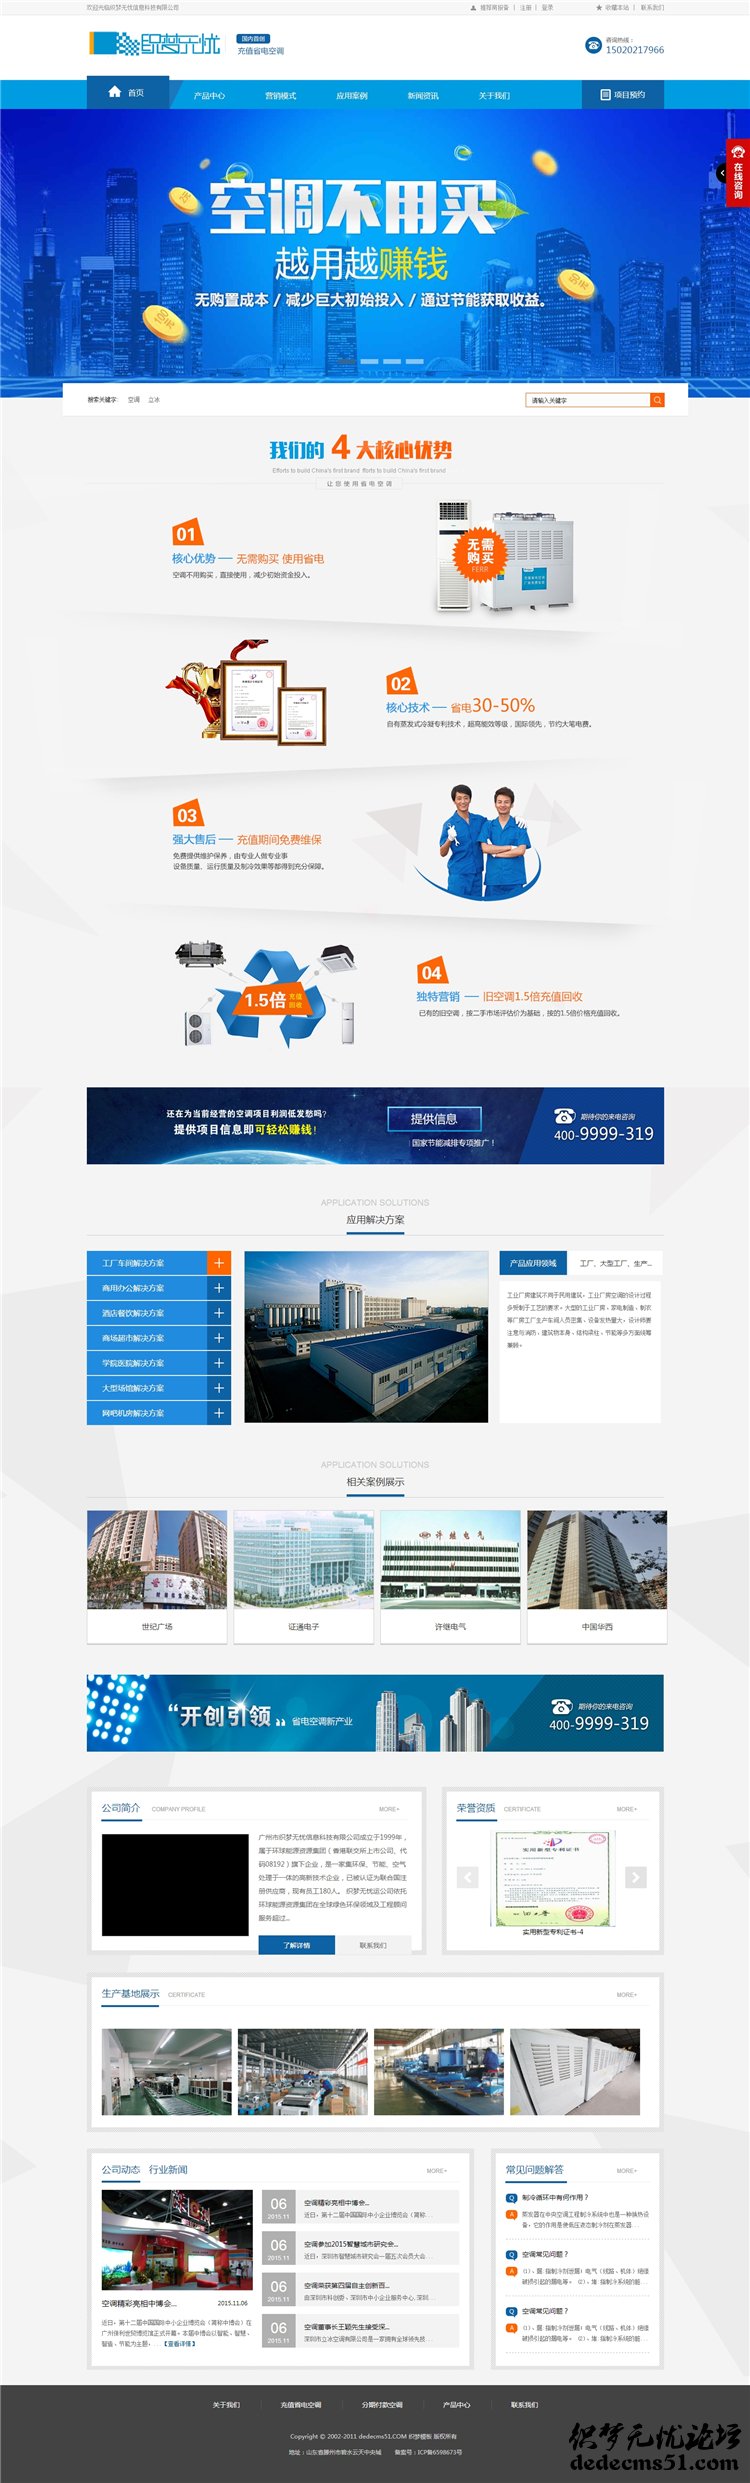 html5高端大气蓝色空调制冷电子企业营销网站织梦模板下载